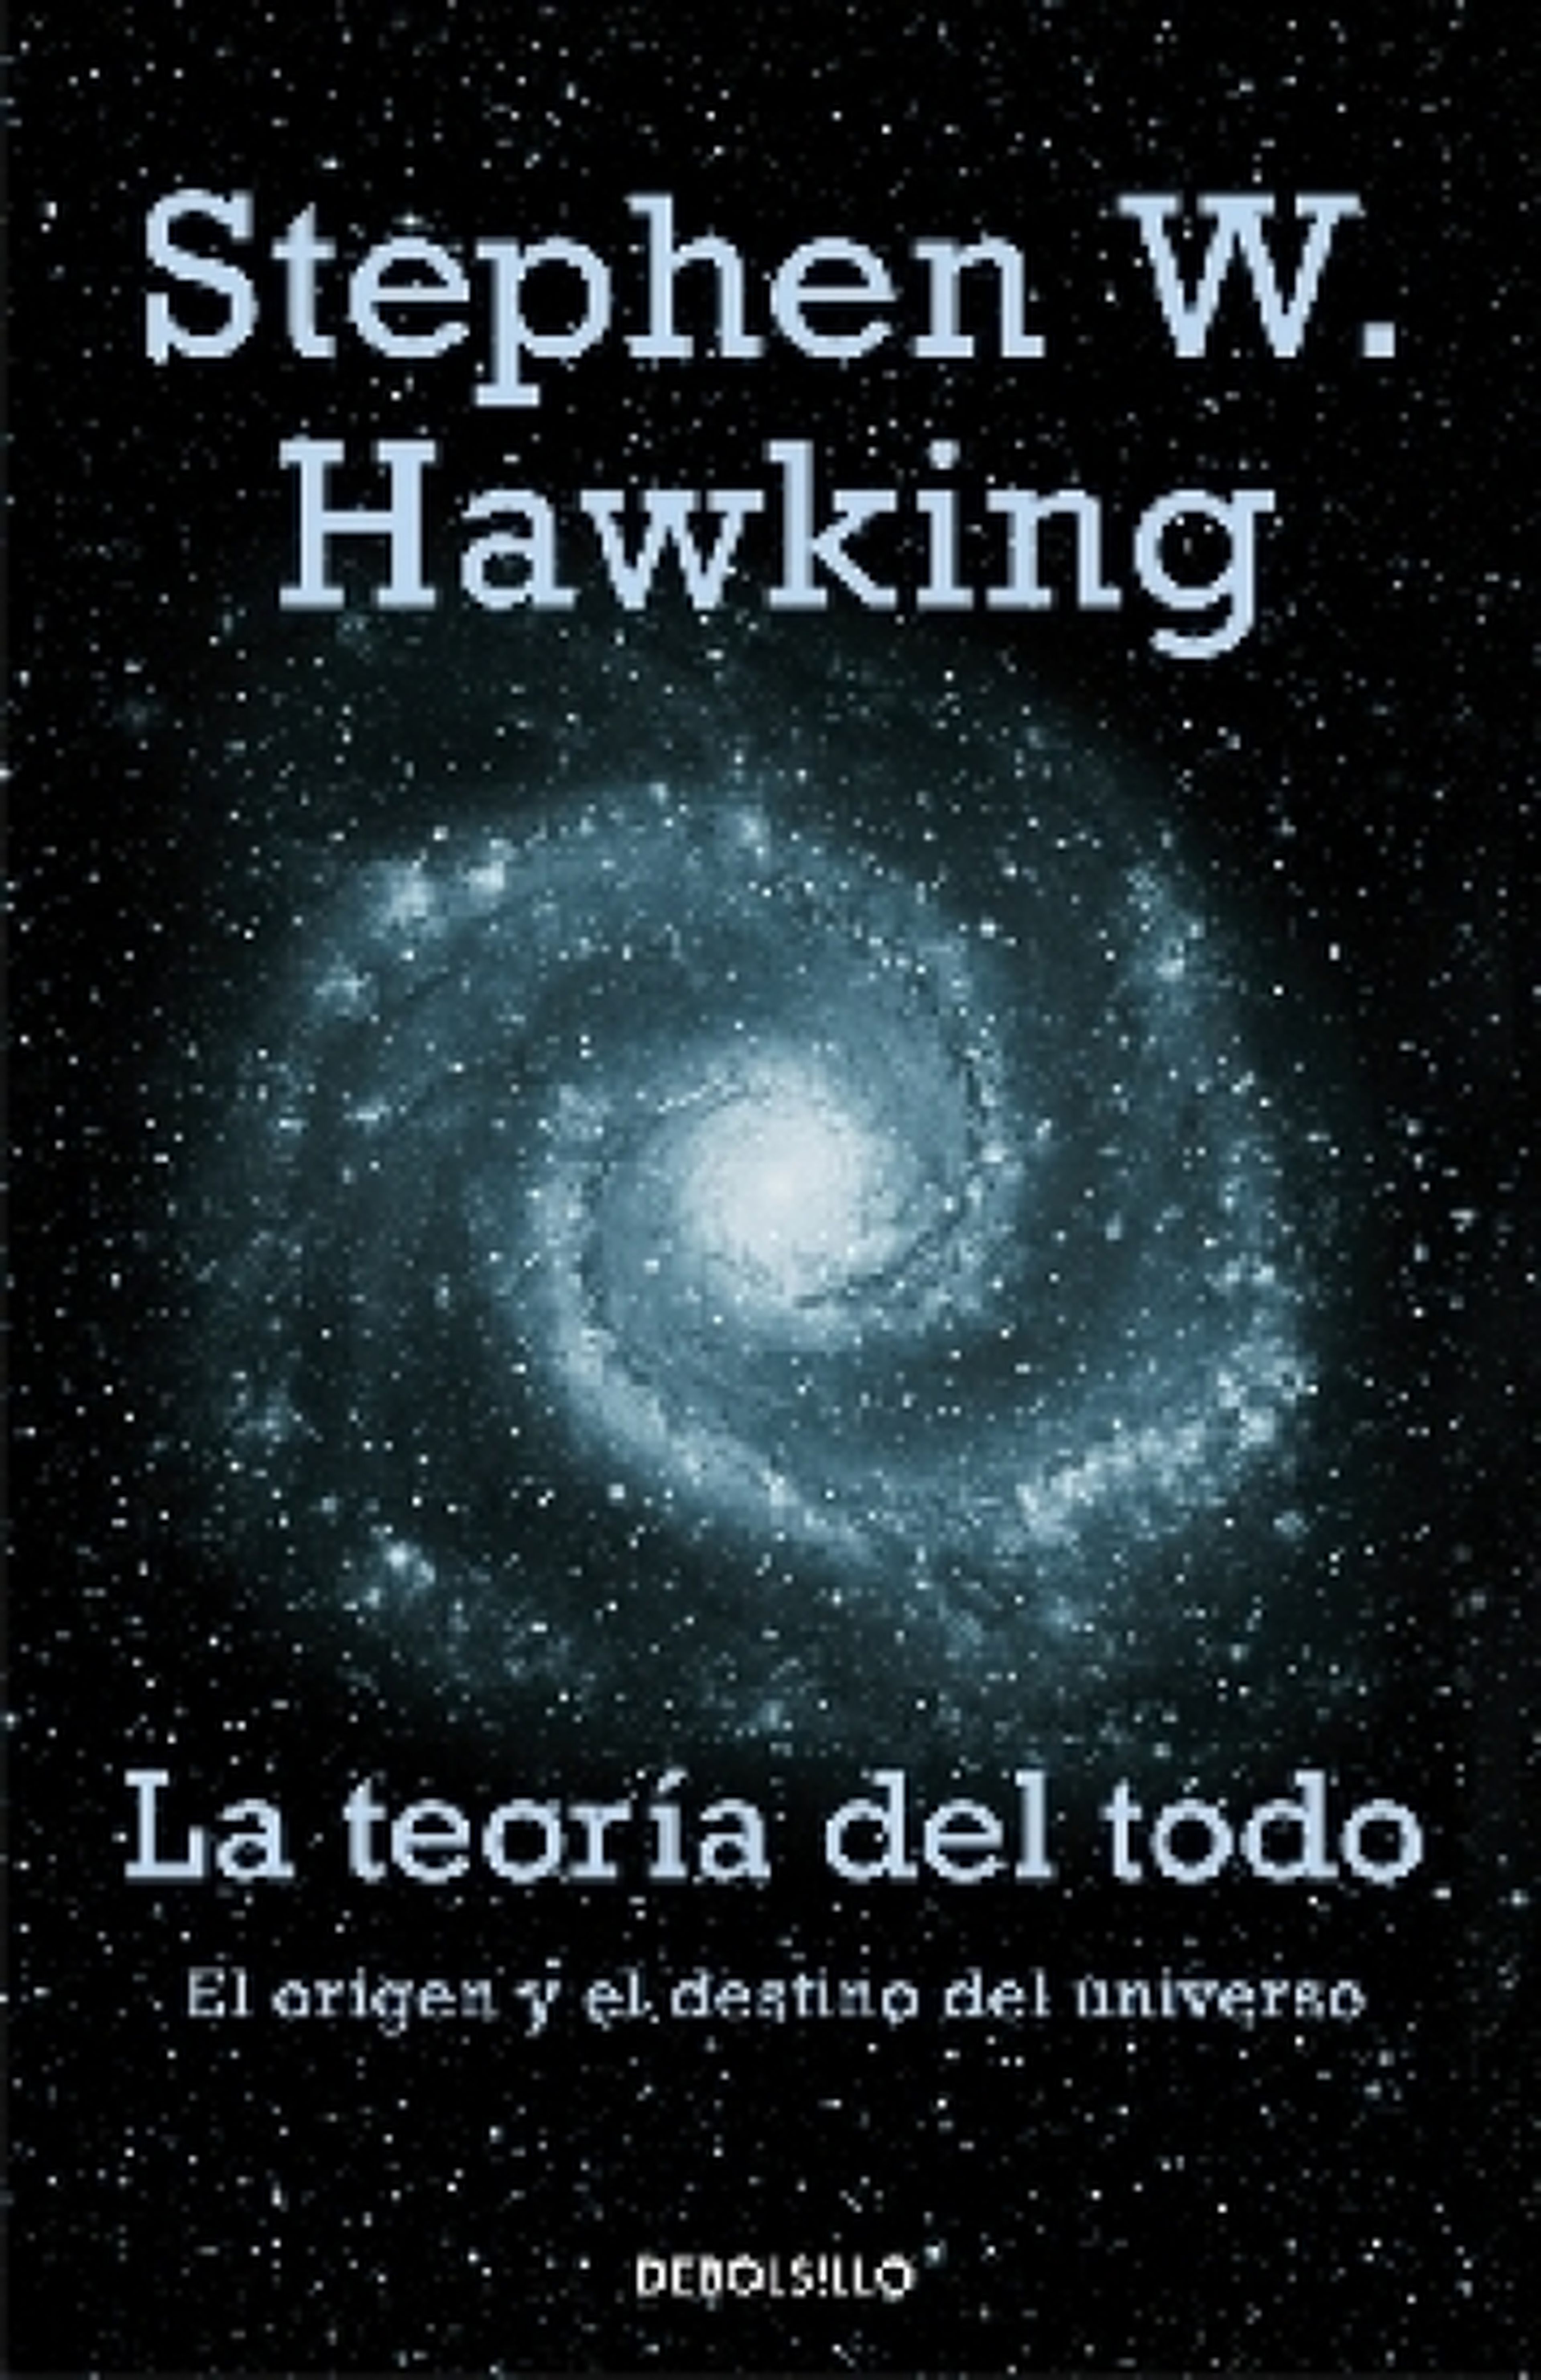 Bergantín ir de compras Pera Los 5 mejores libros escritos por Stephen Hawking | Business Insider España